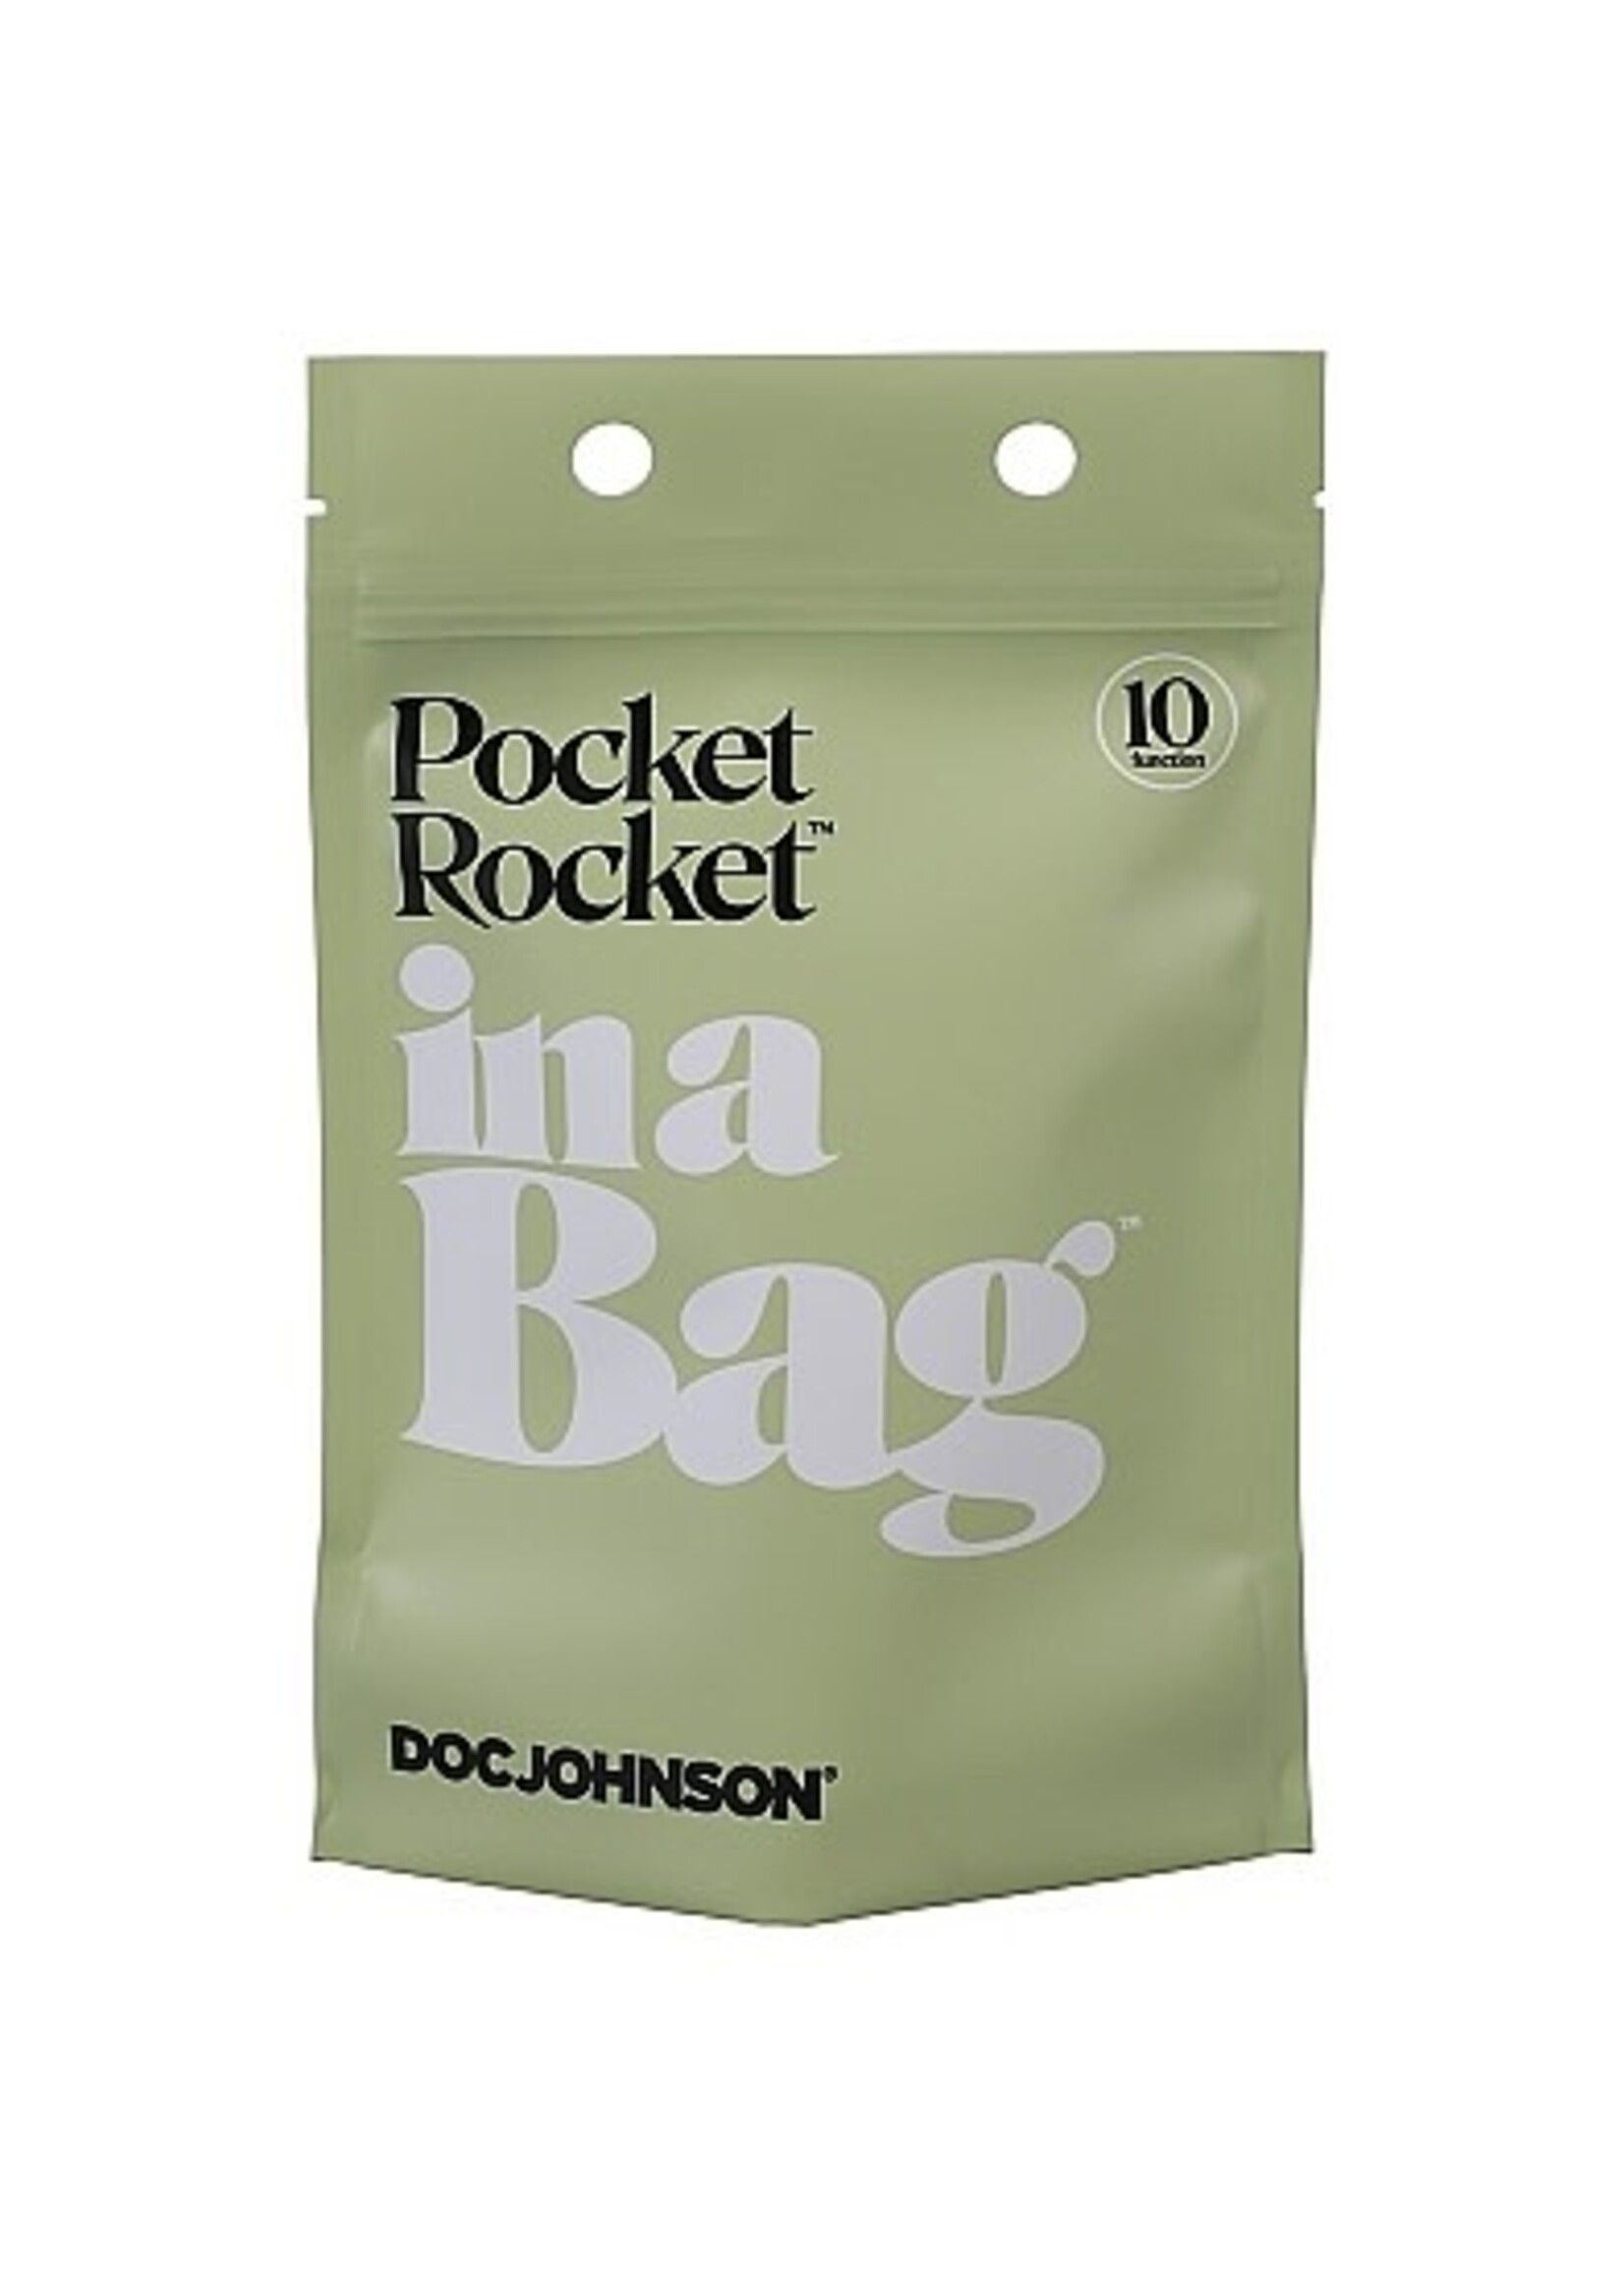 Doc Johnson Pocket rocket in a bag